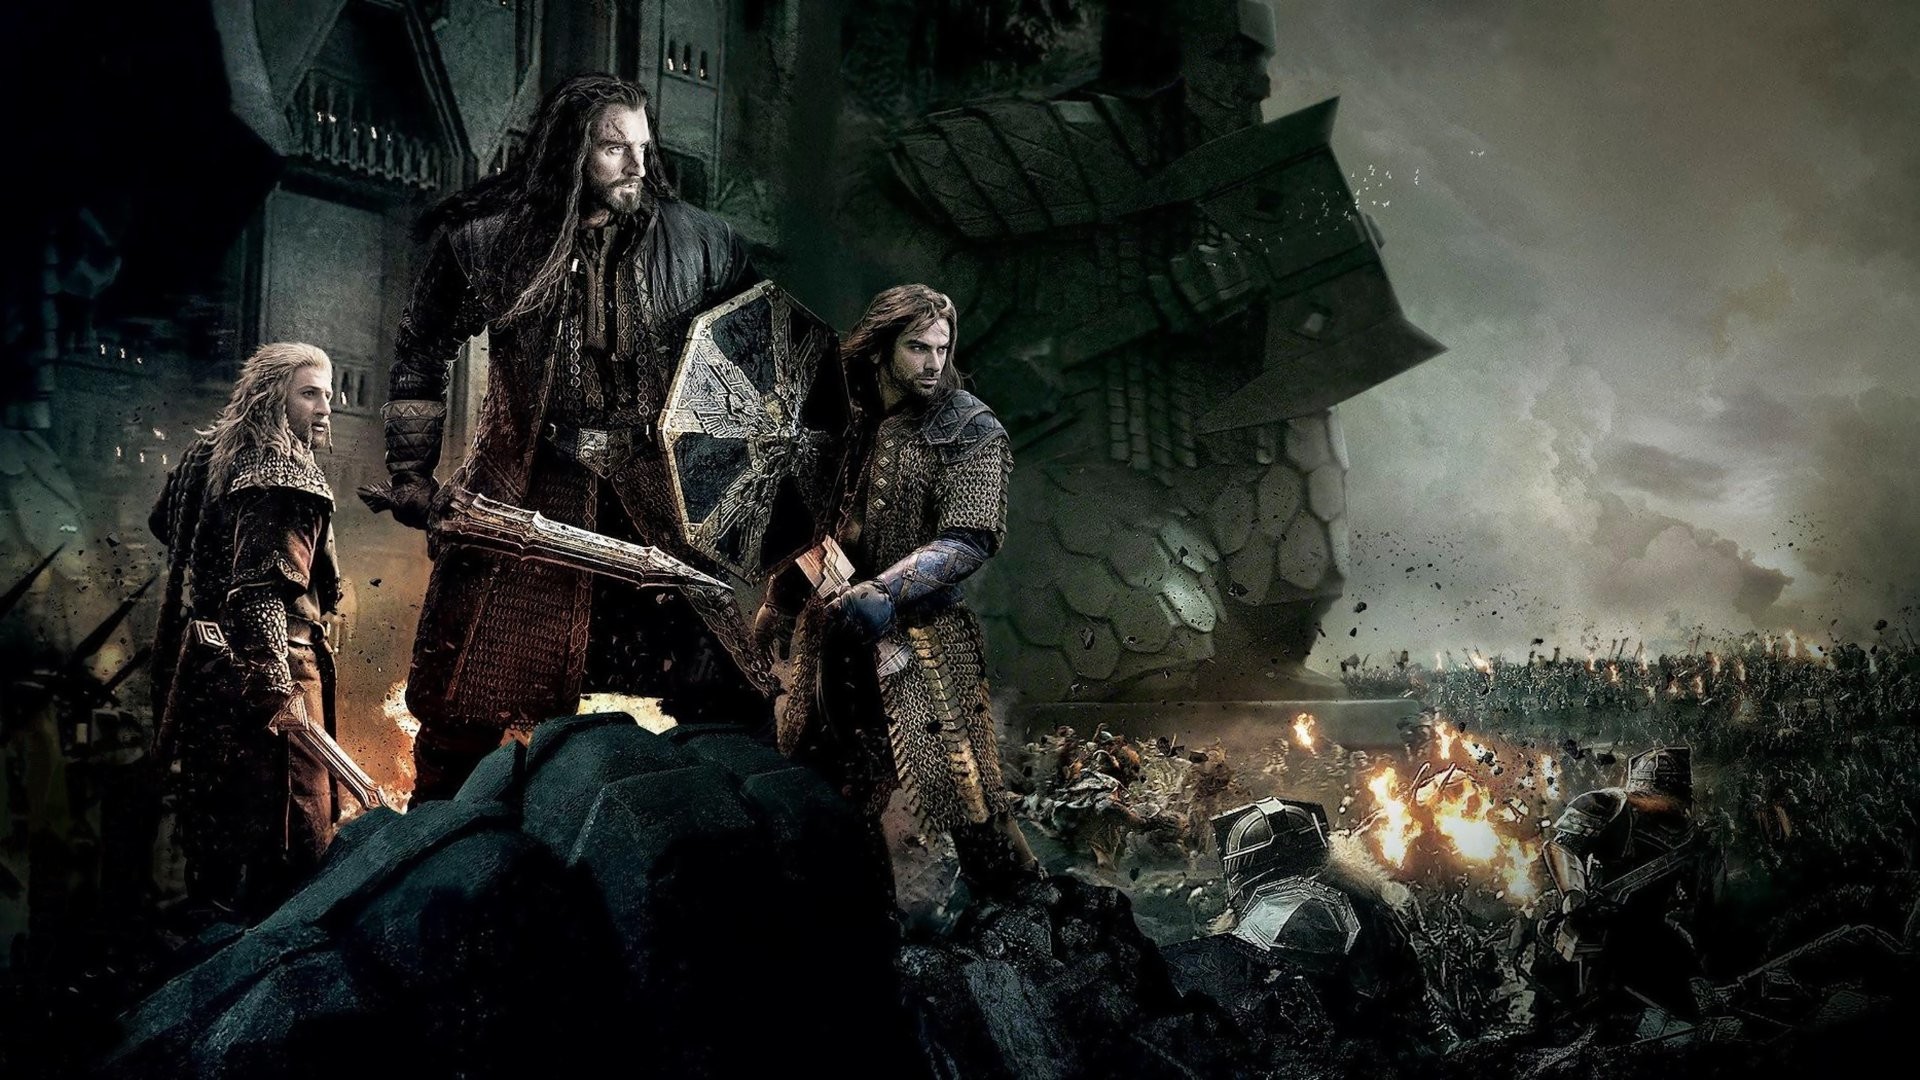 1920x1080 Der Hobbit: Die Schlacht der FÃ¼nf Heere HD Wallpaper | Hintergrund |   | ID:605861 - Wallpaper Abyss